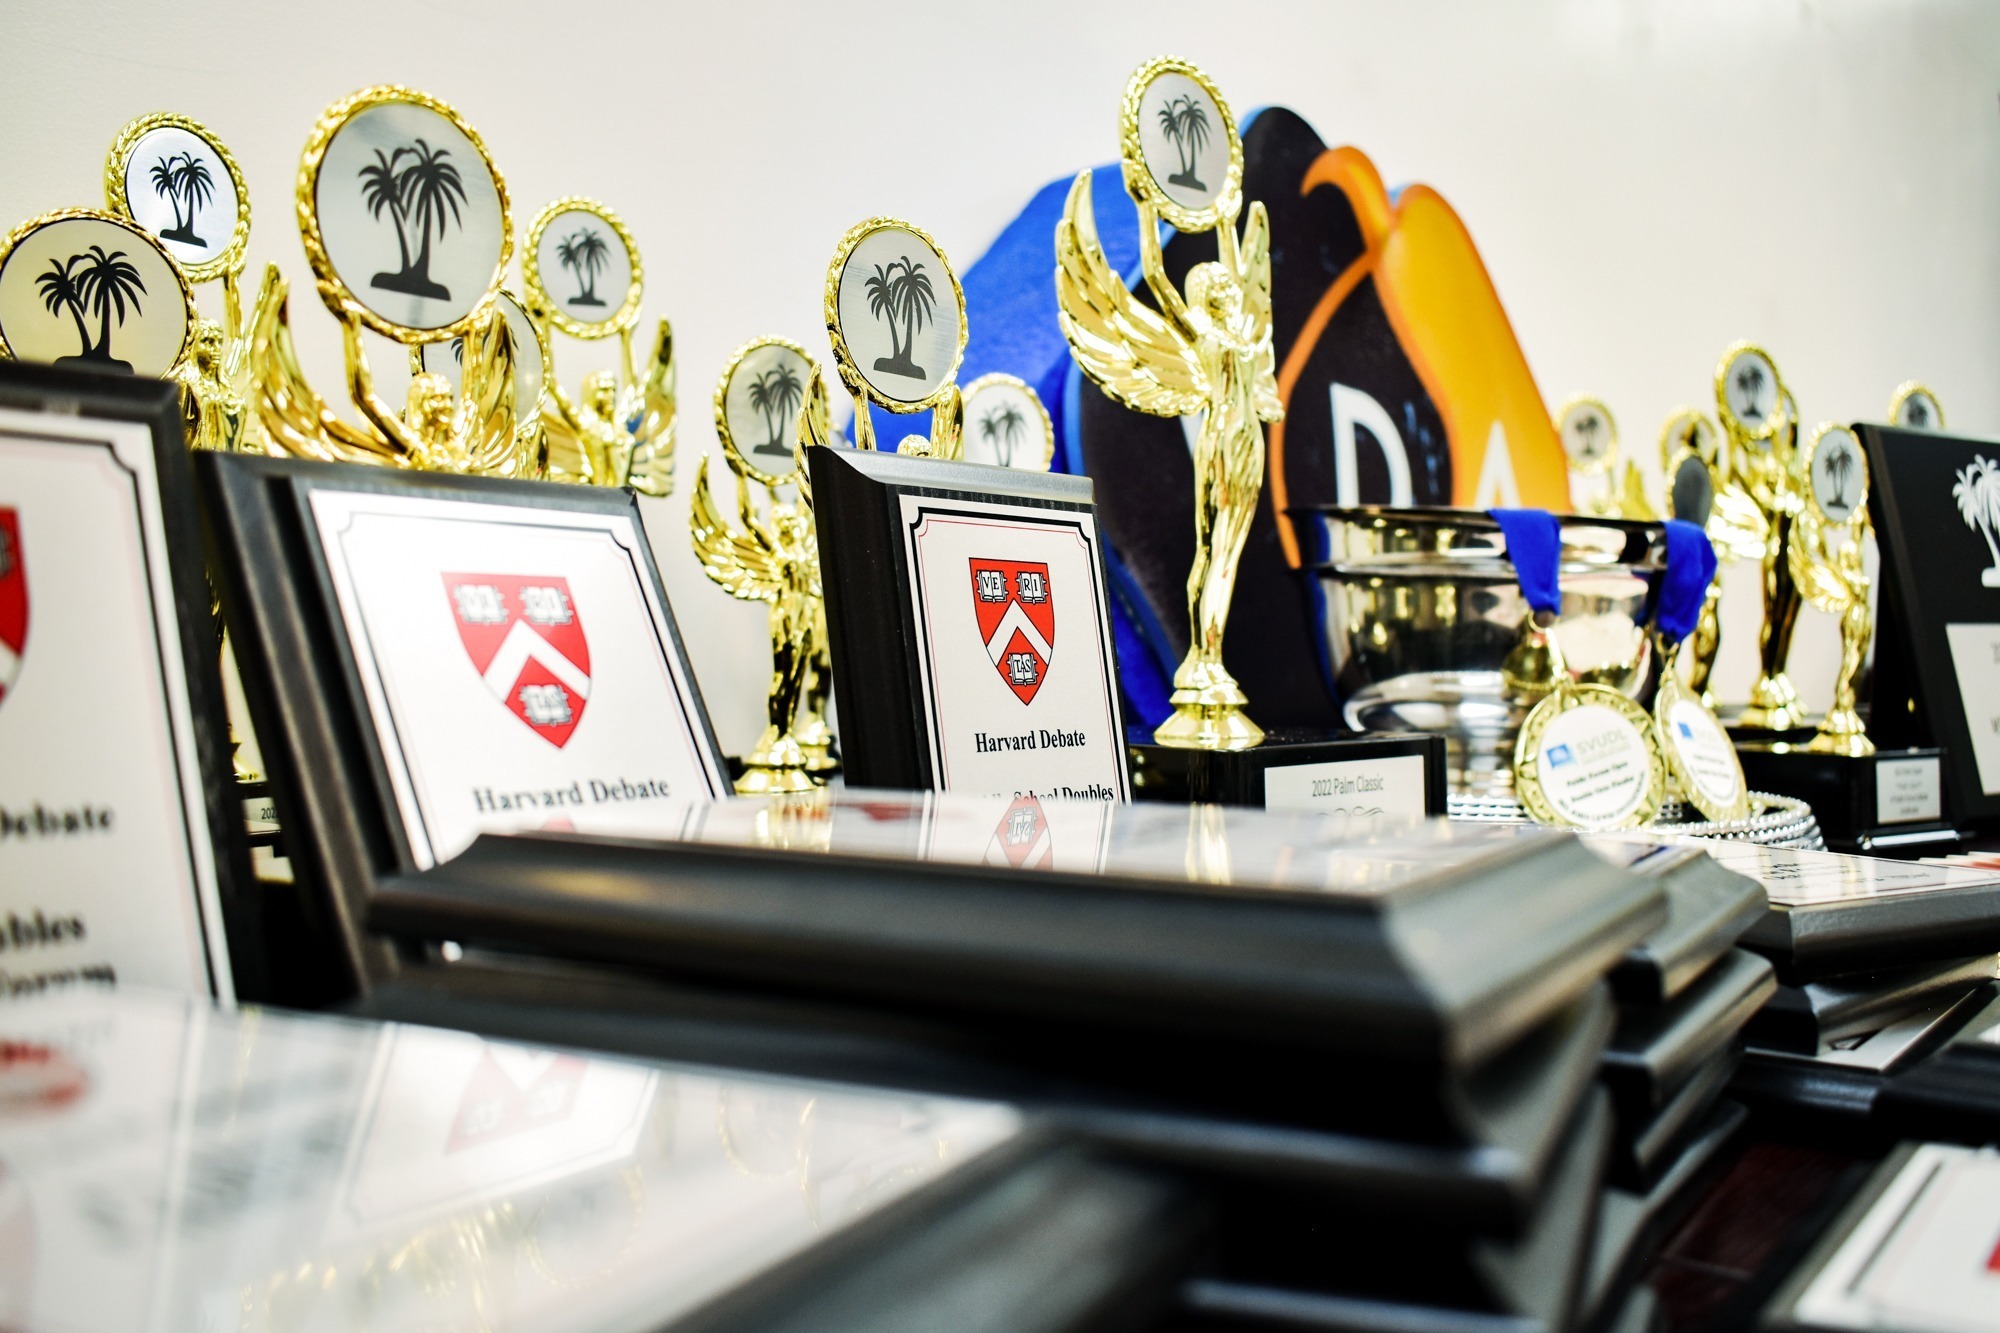 Vancouver Debate Academy 2022 Harvard awards & trophies